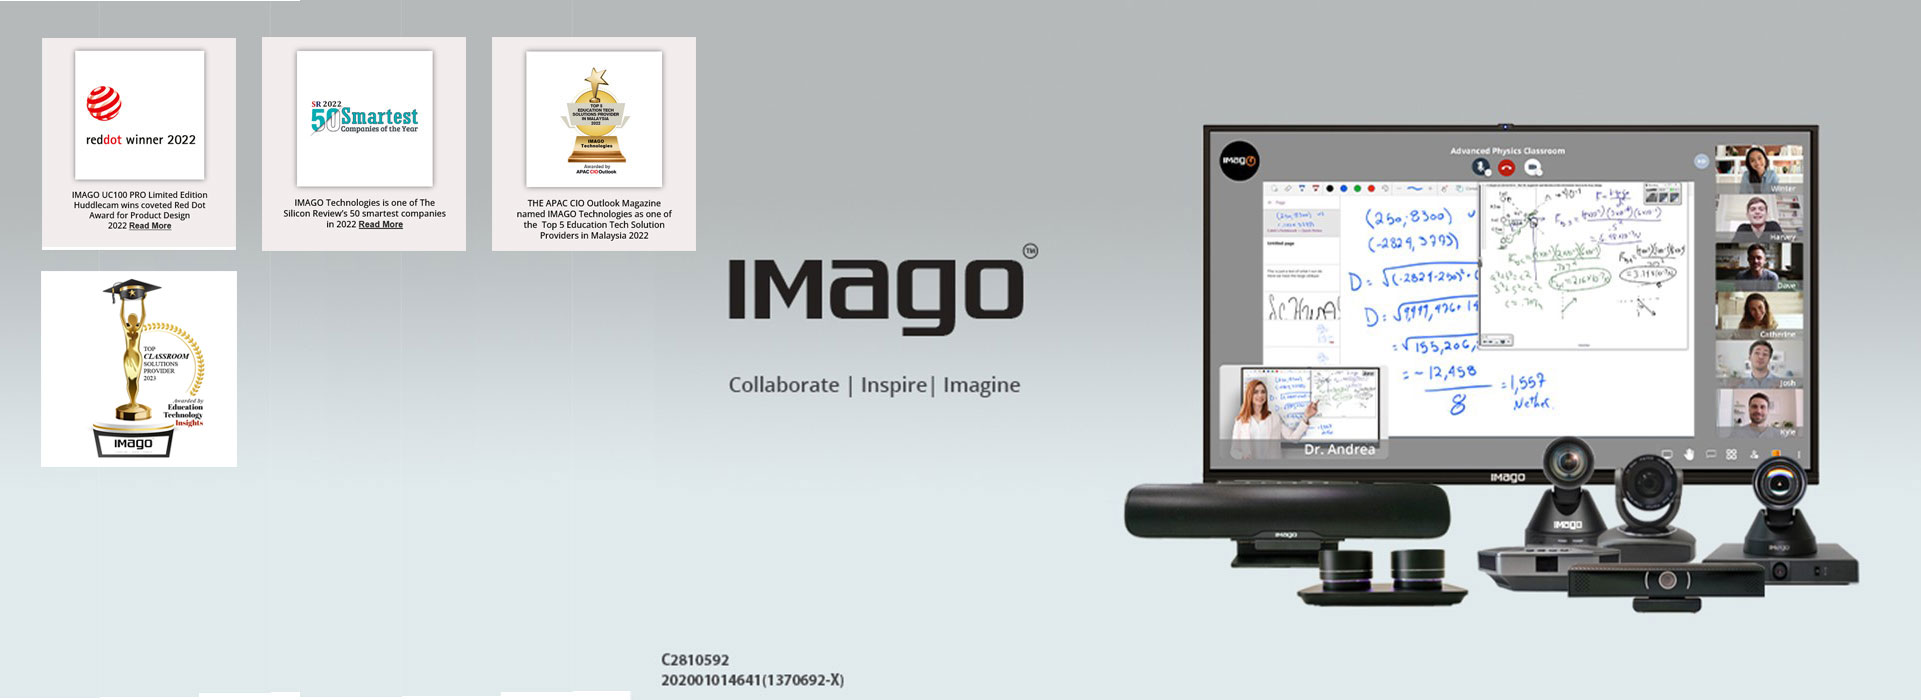 Imago - Reddot Winner 2022